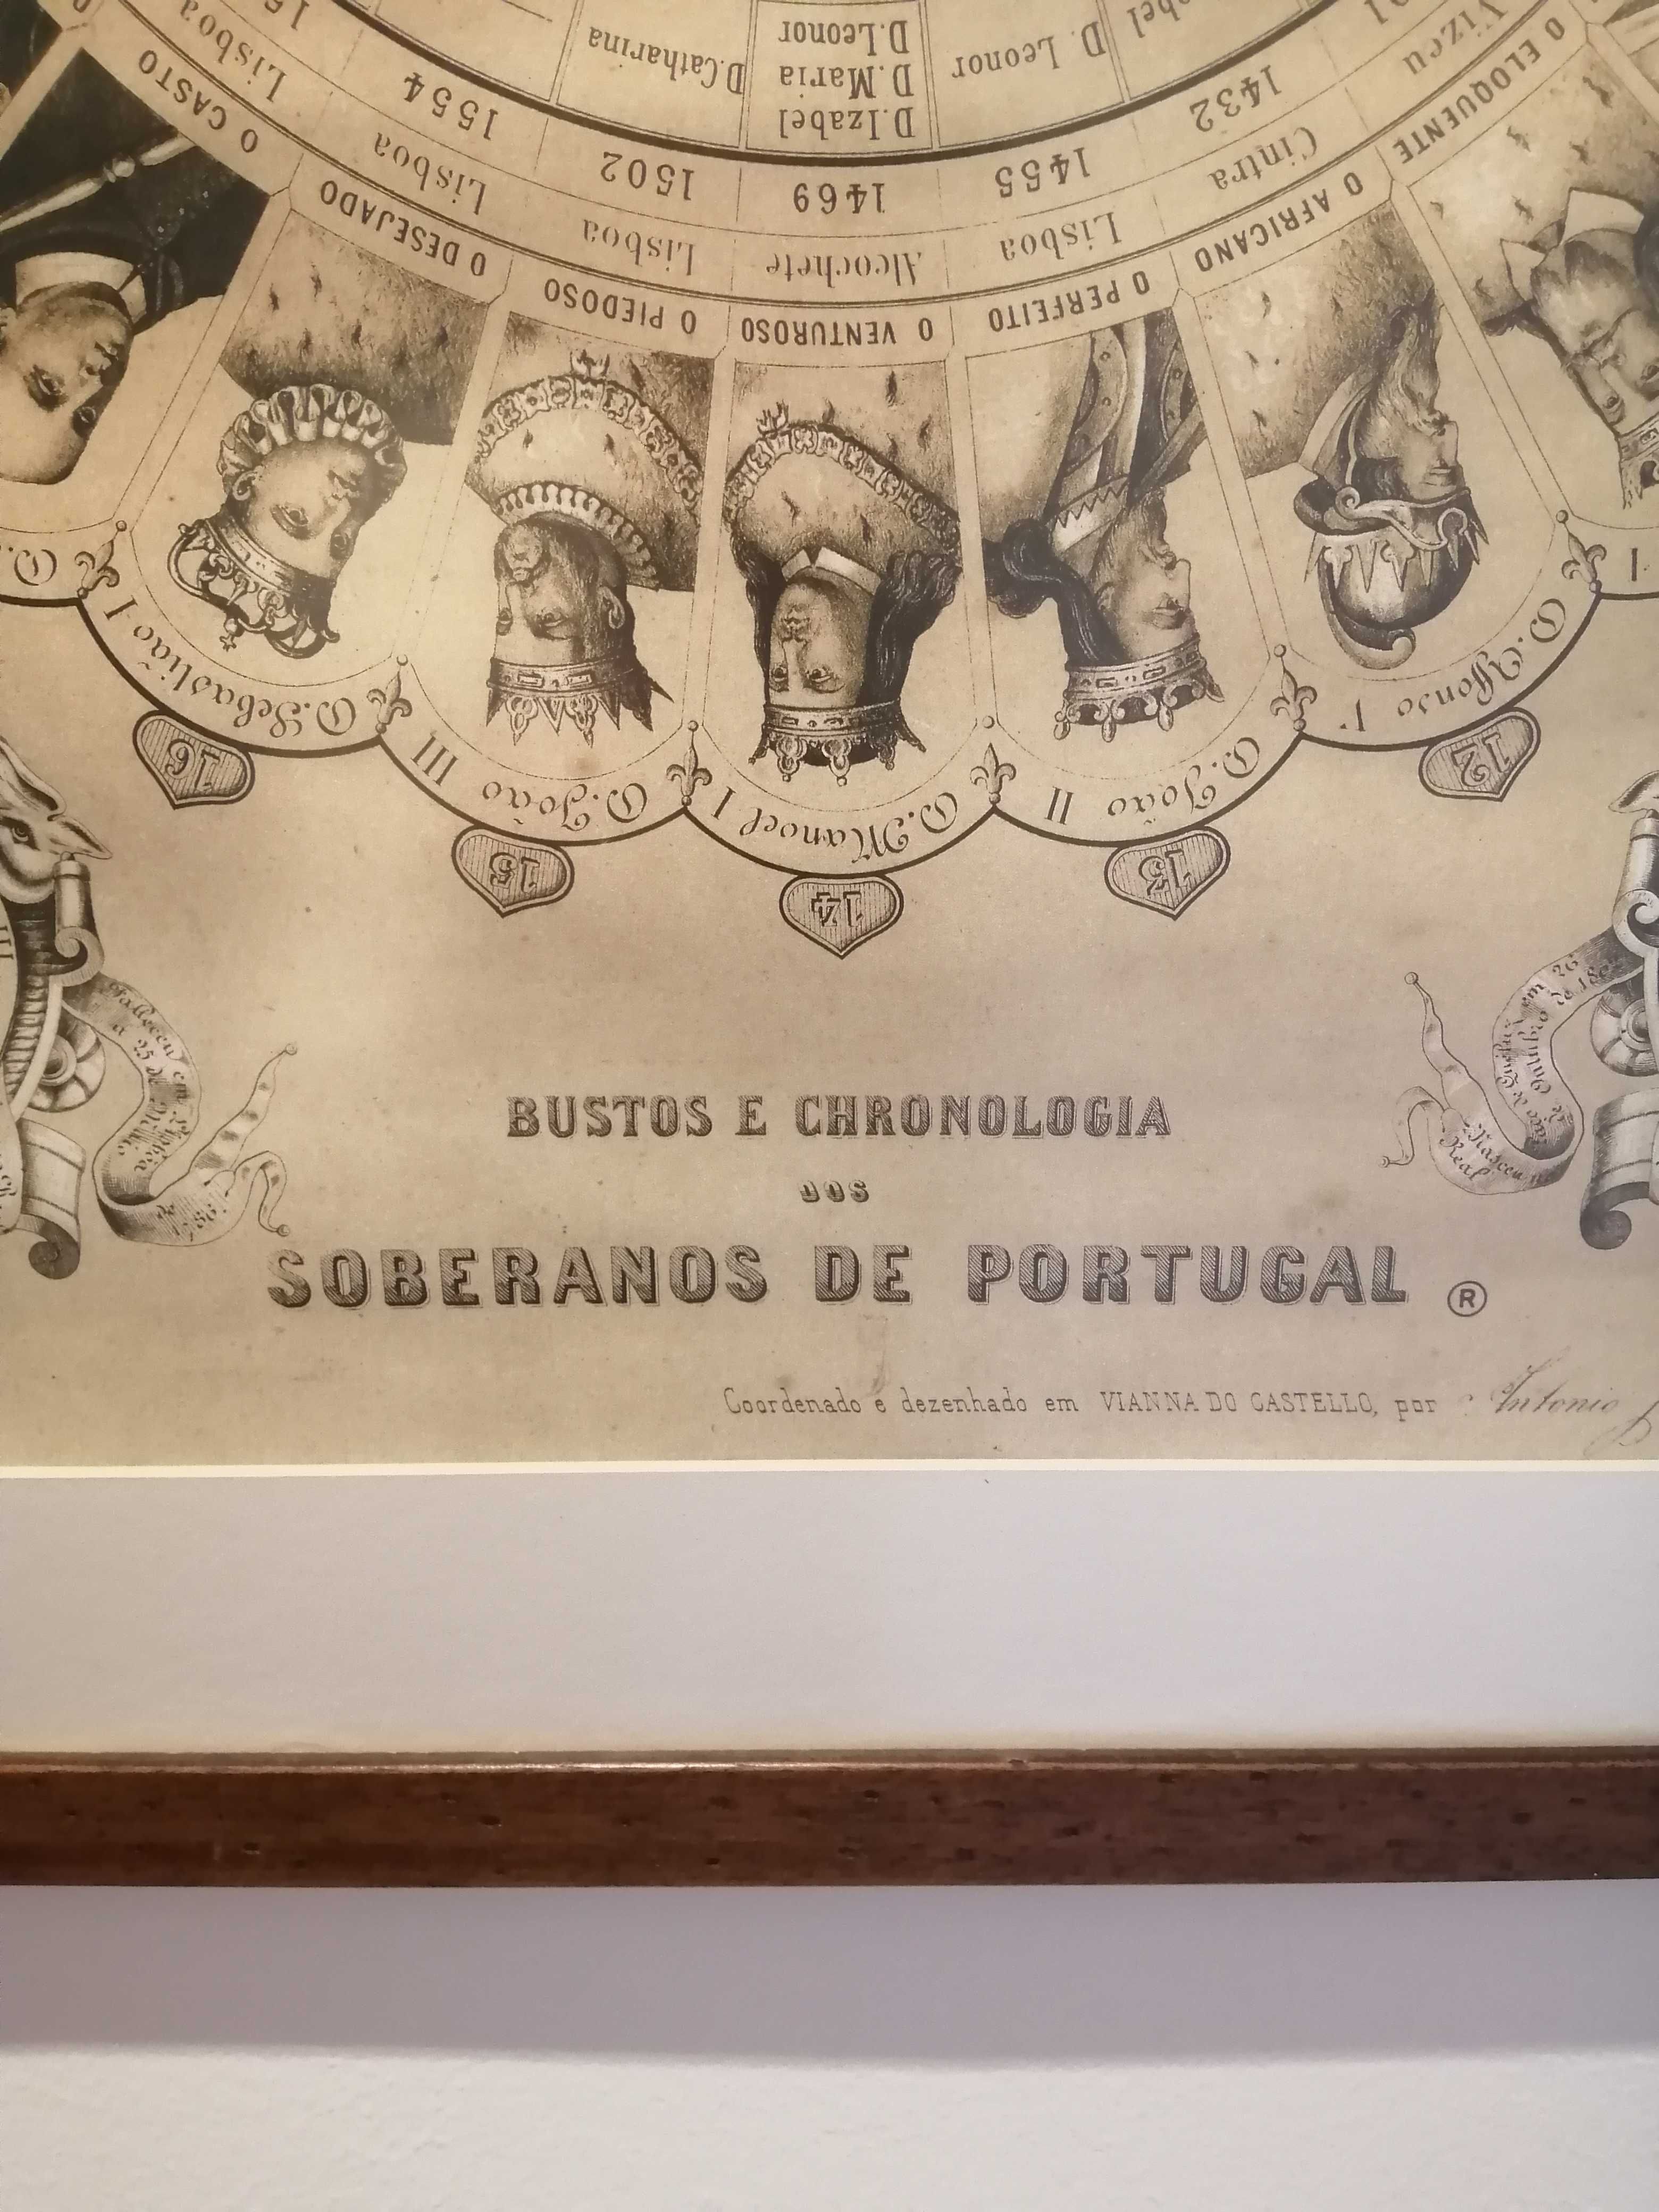 Litografia "Bustos e cronologia dos soberanos de Portugal" com moldura